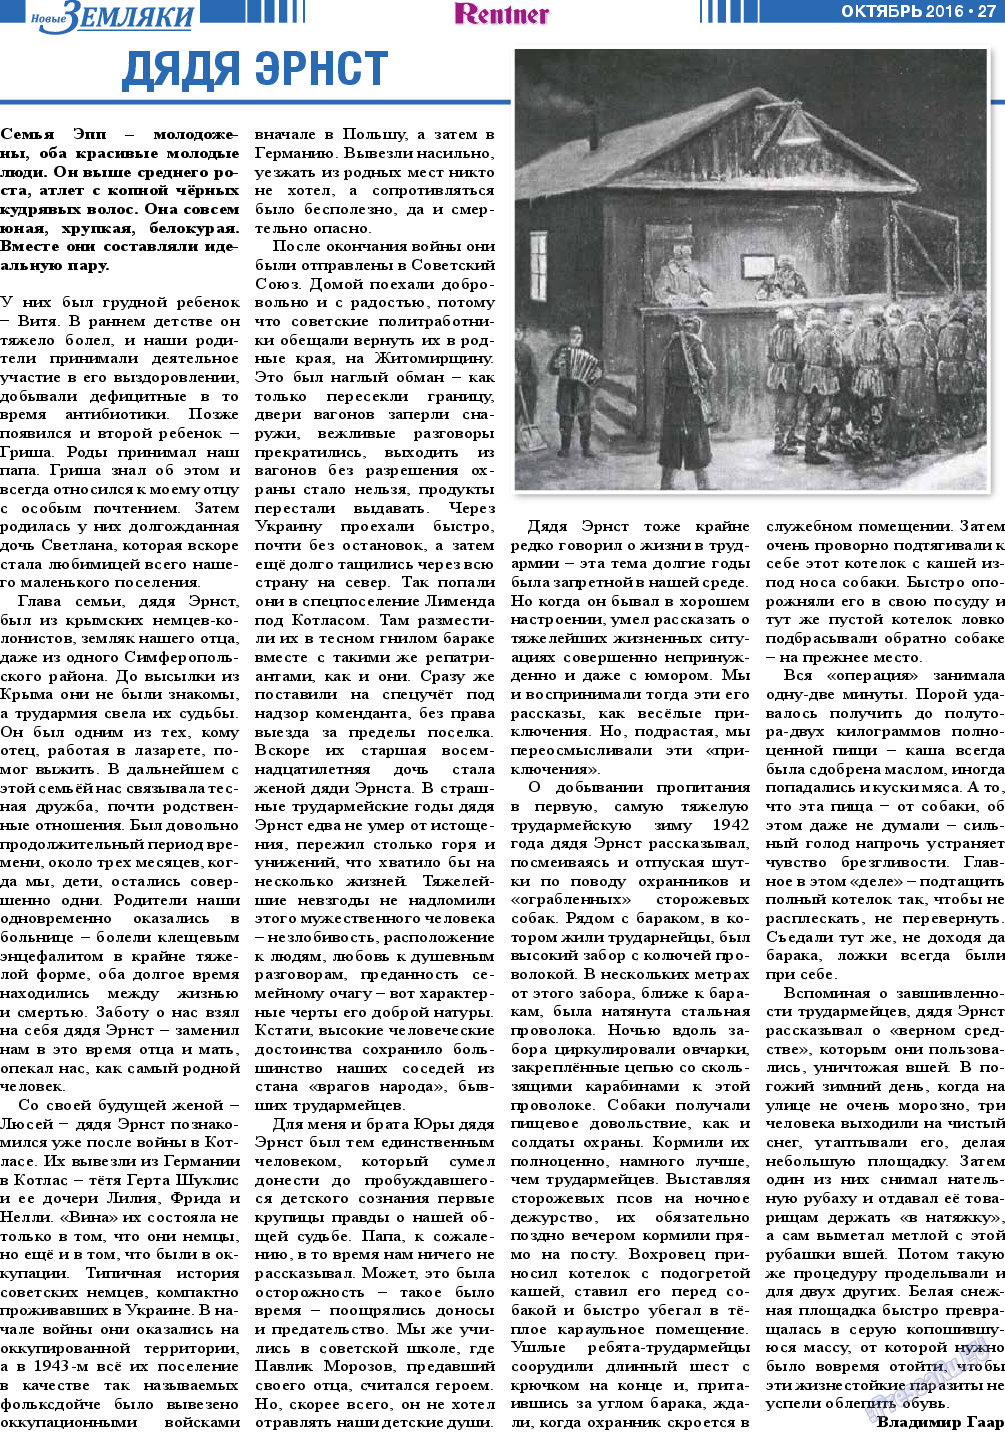 Новые Земляки, газета. 2016 №10 стр.27